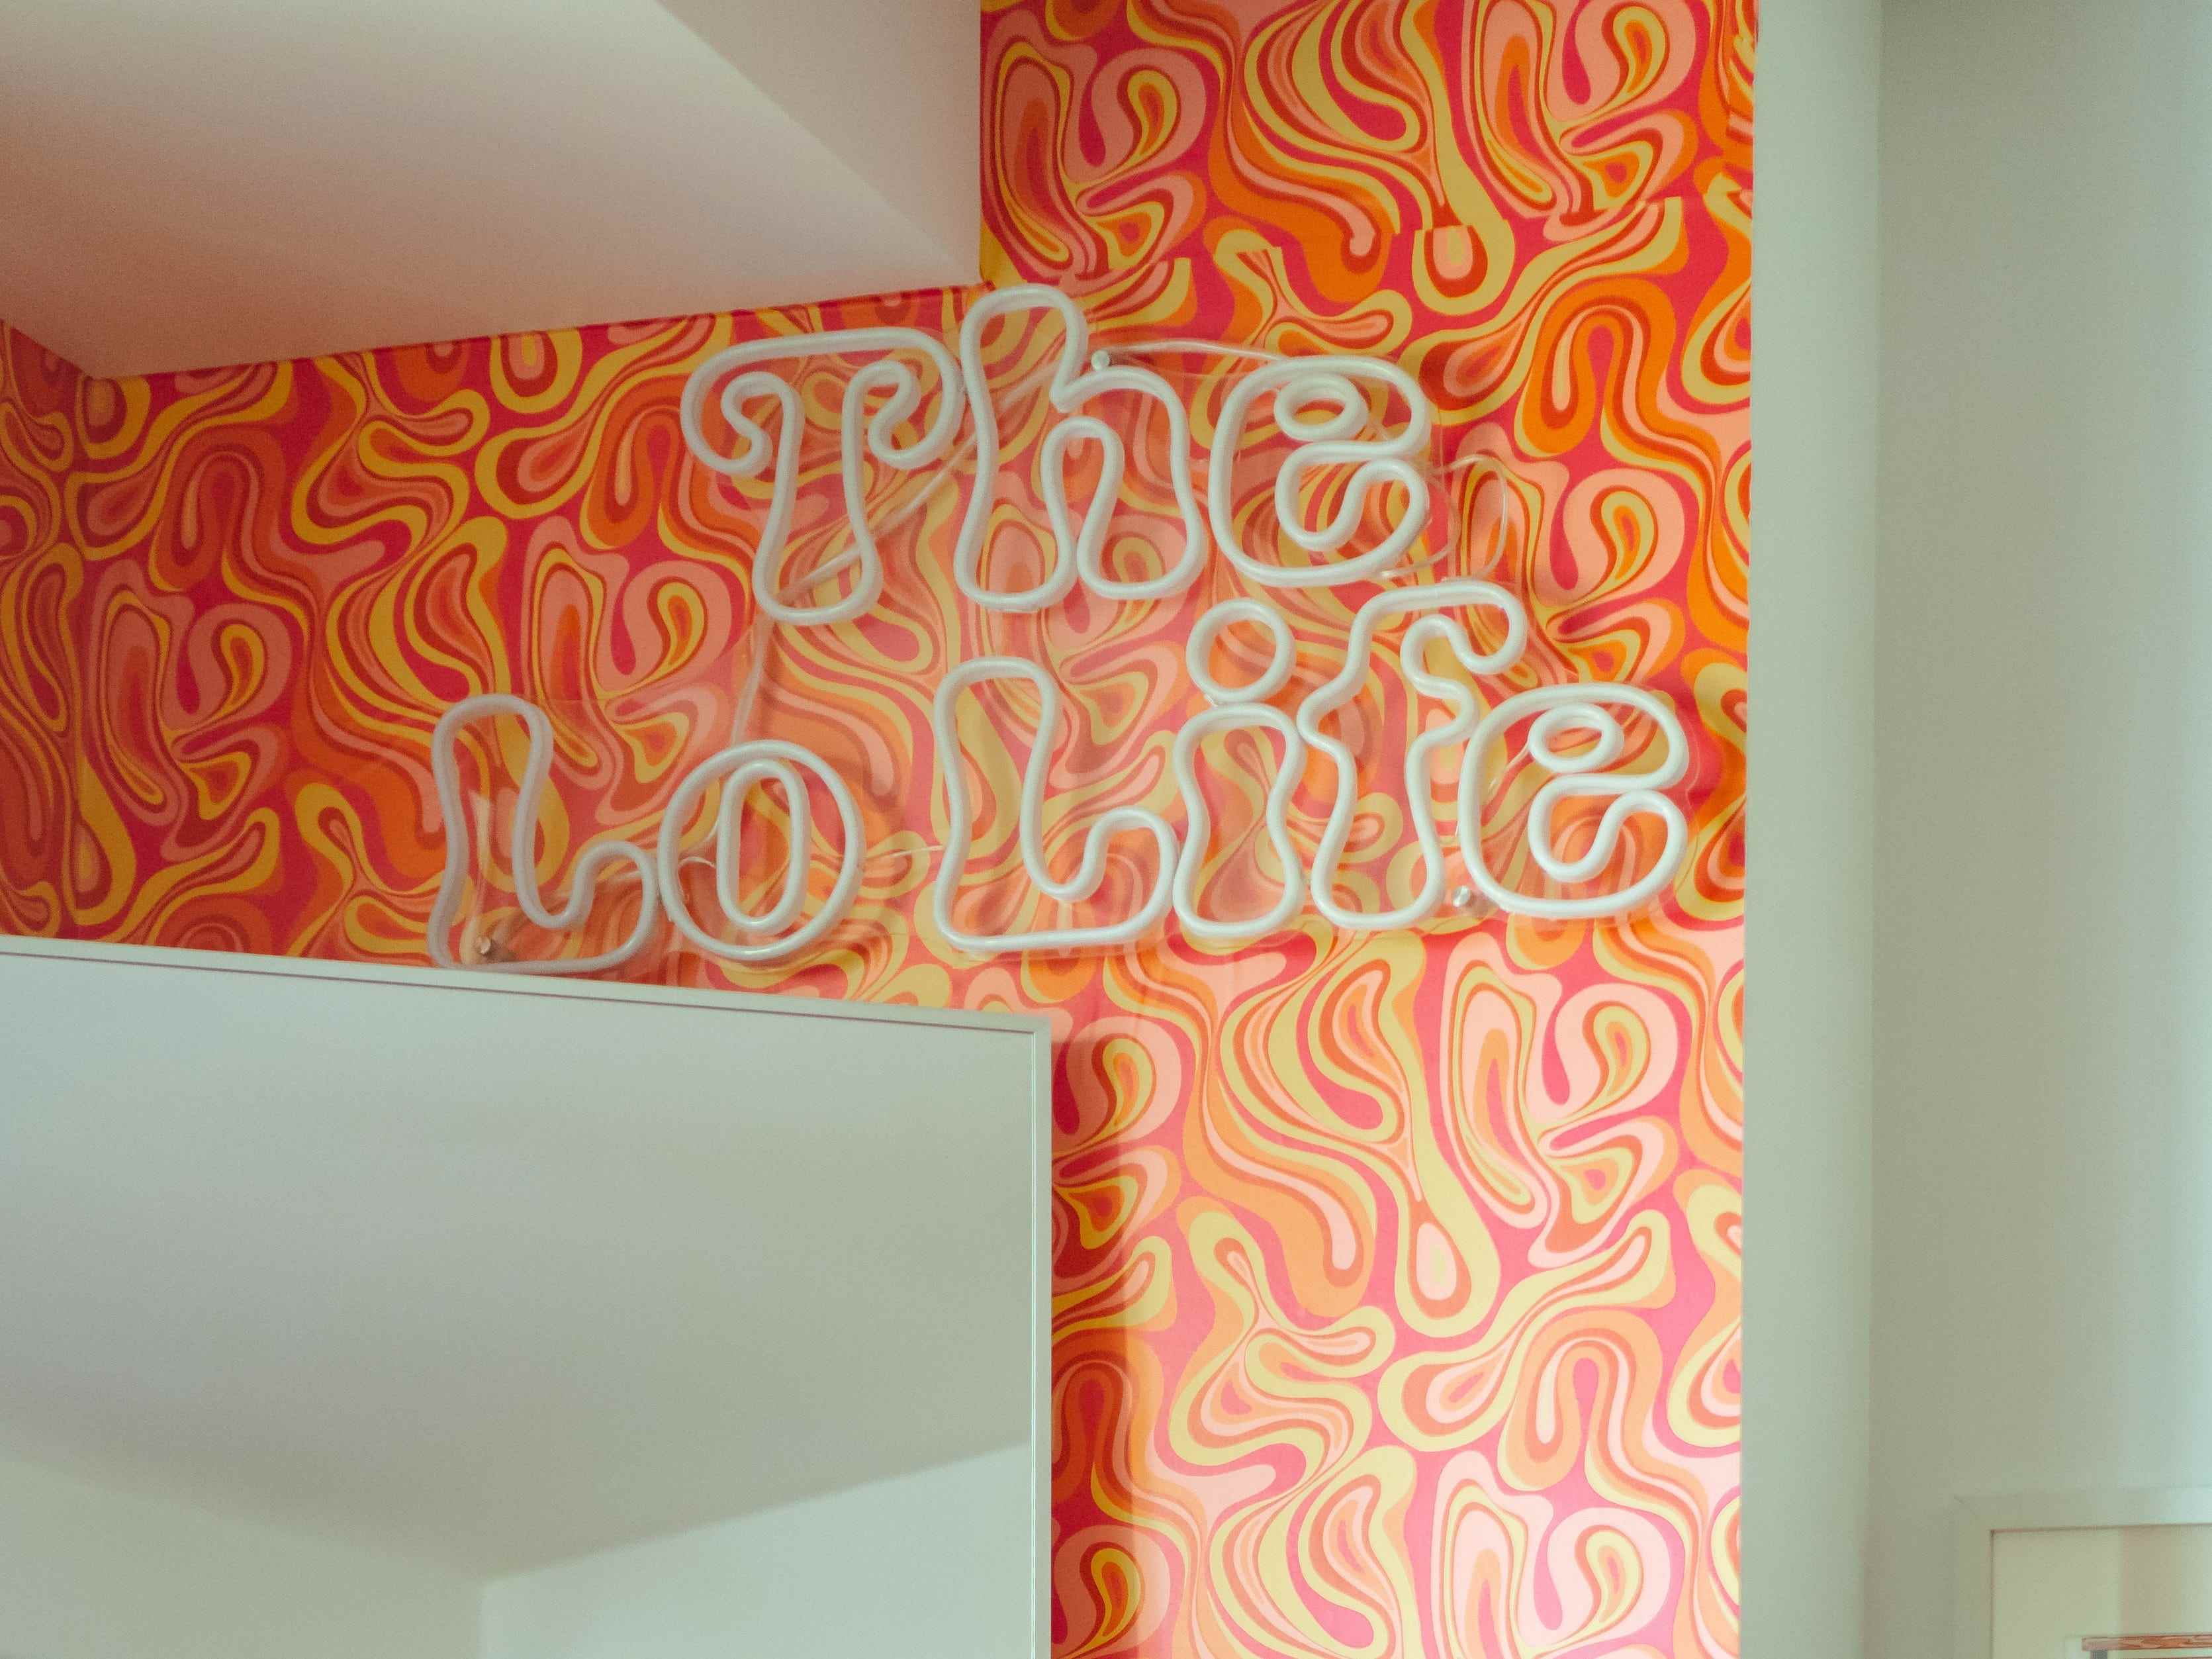 Ein Neonschild „The Lo Life“ an einer Wand mit orangefarbener Wirbeltapete